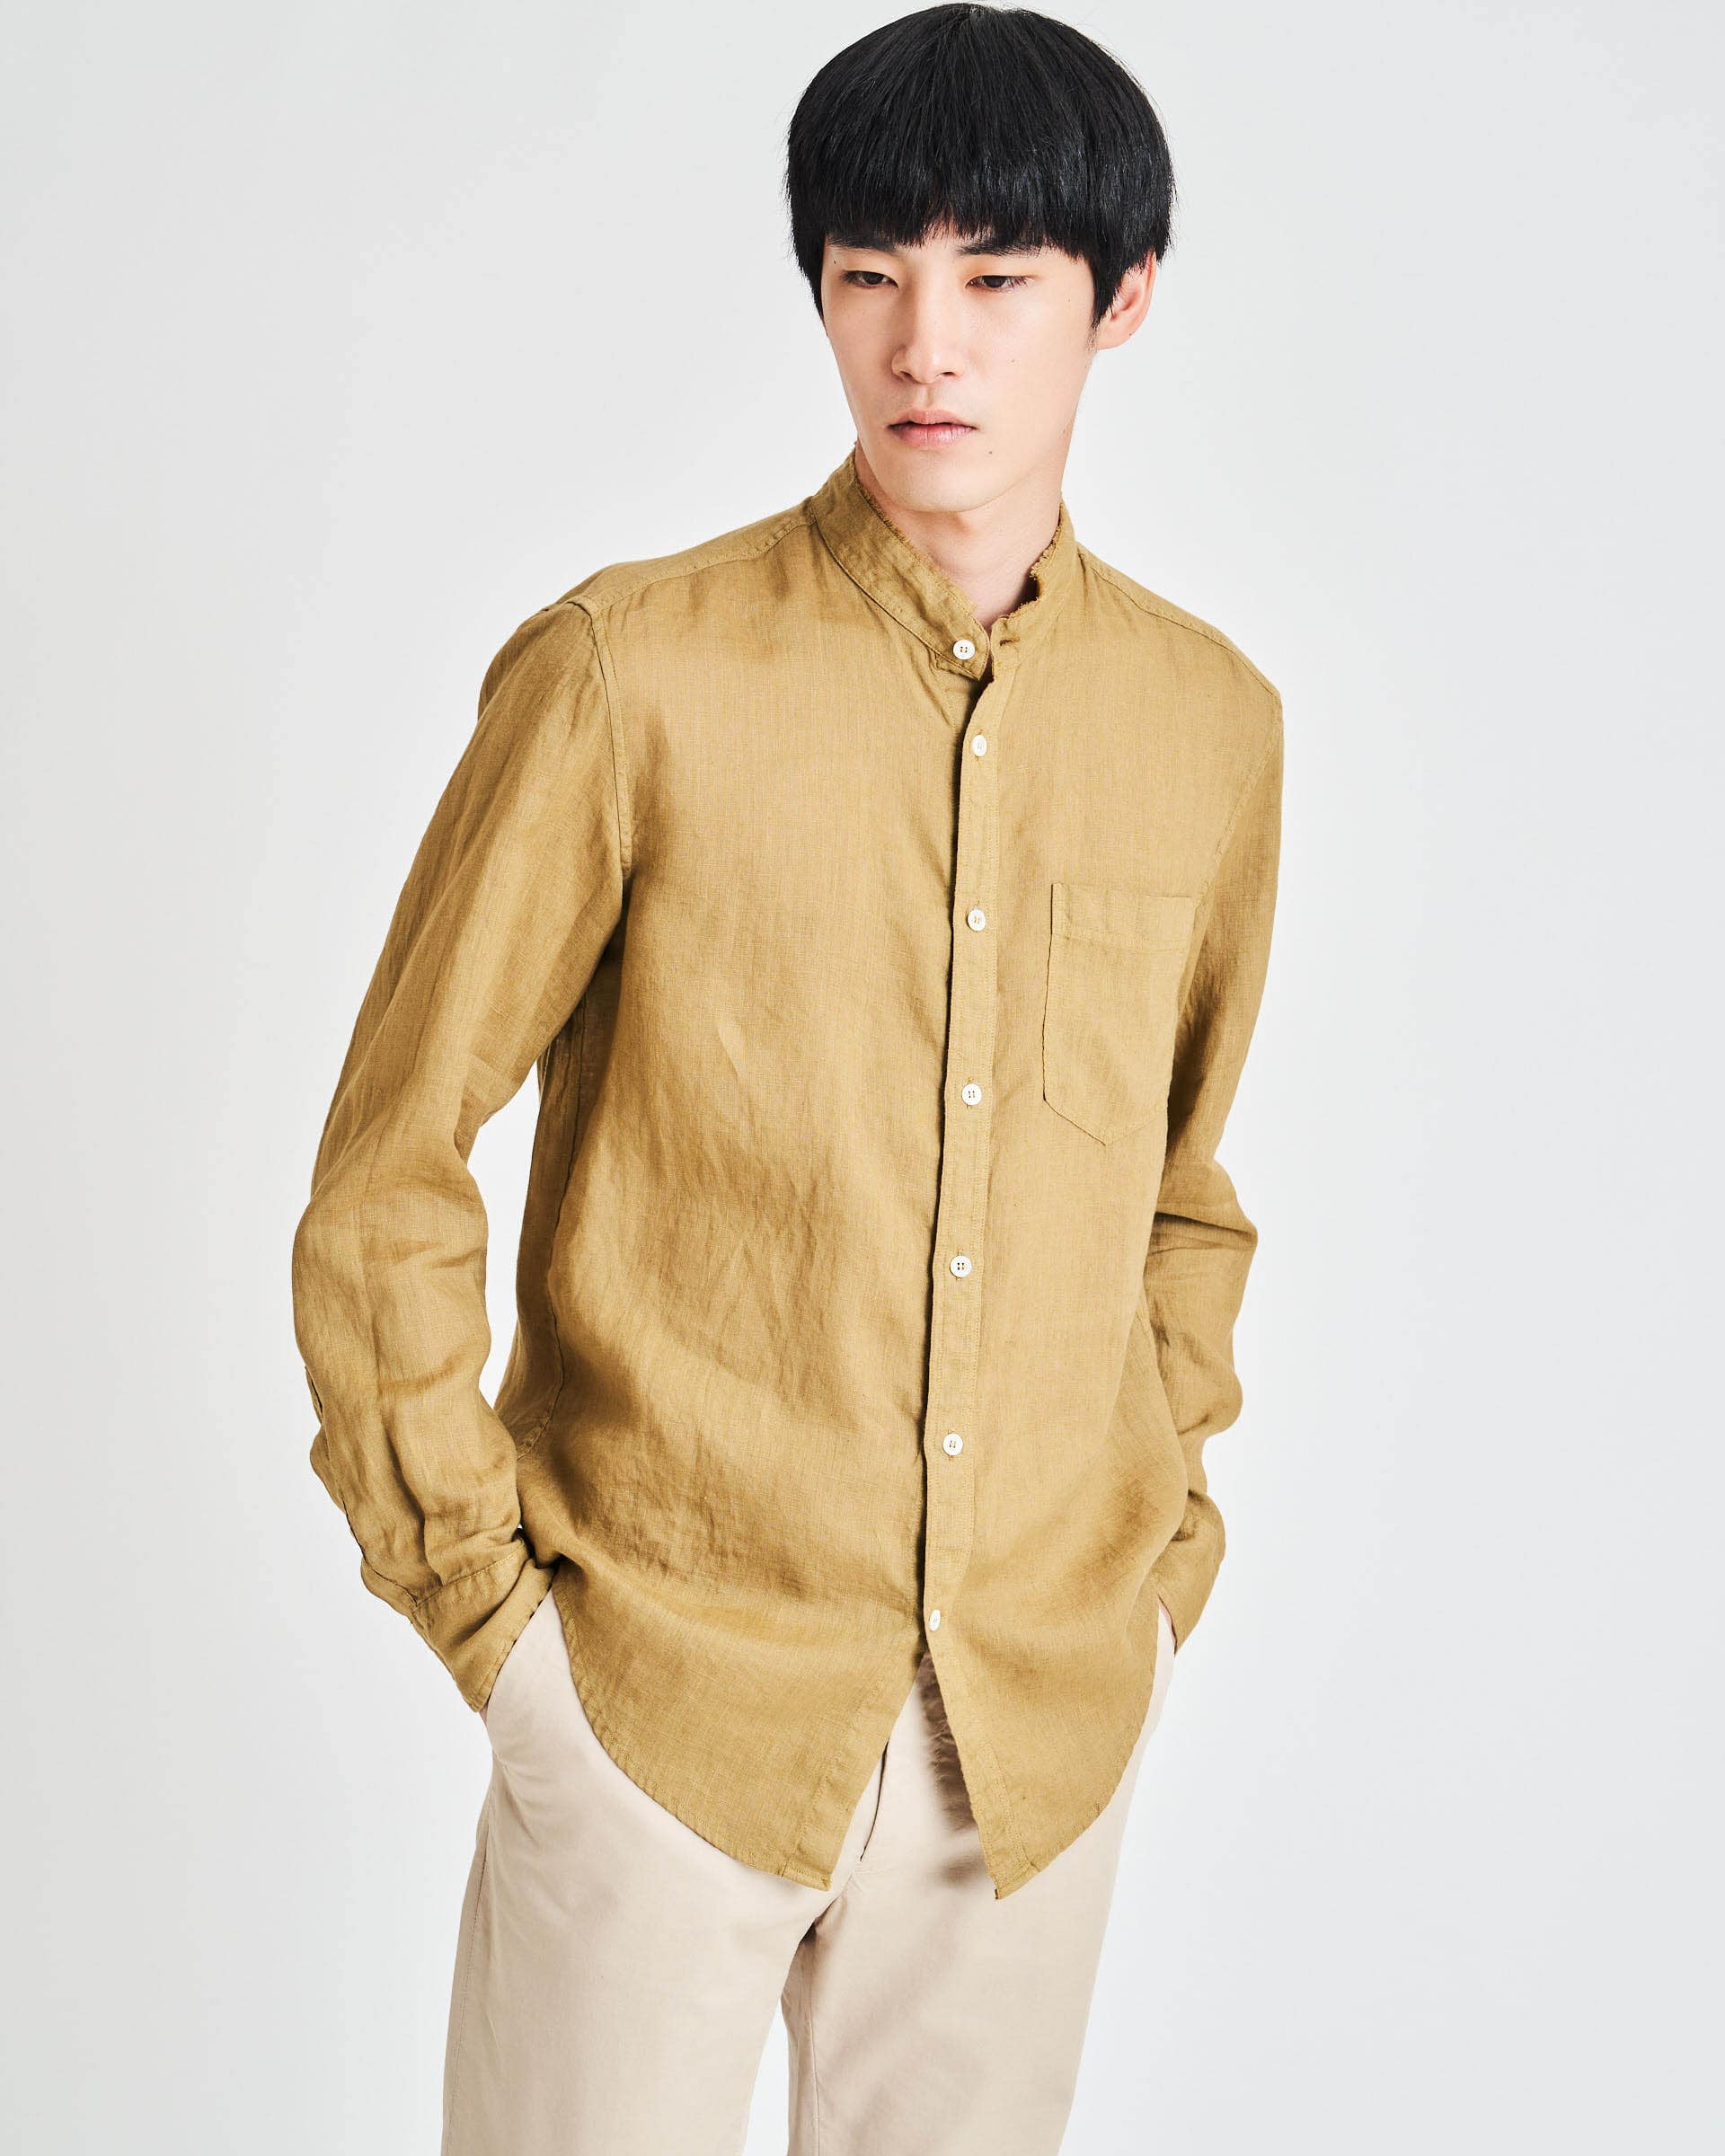 The Market Store | Linen Korean Shirt